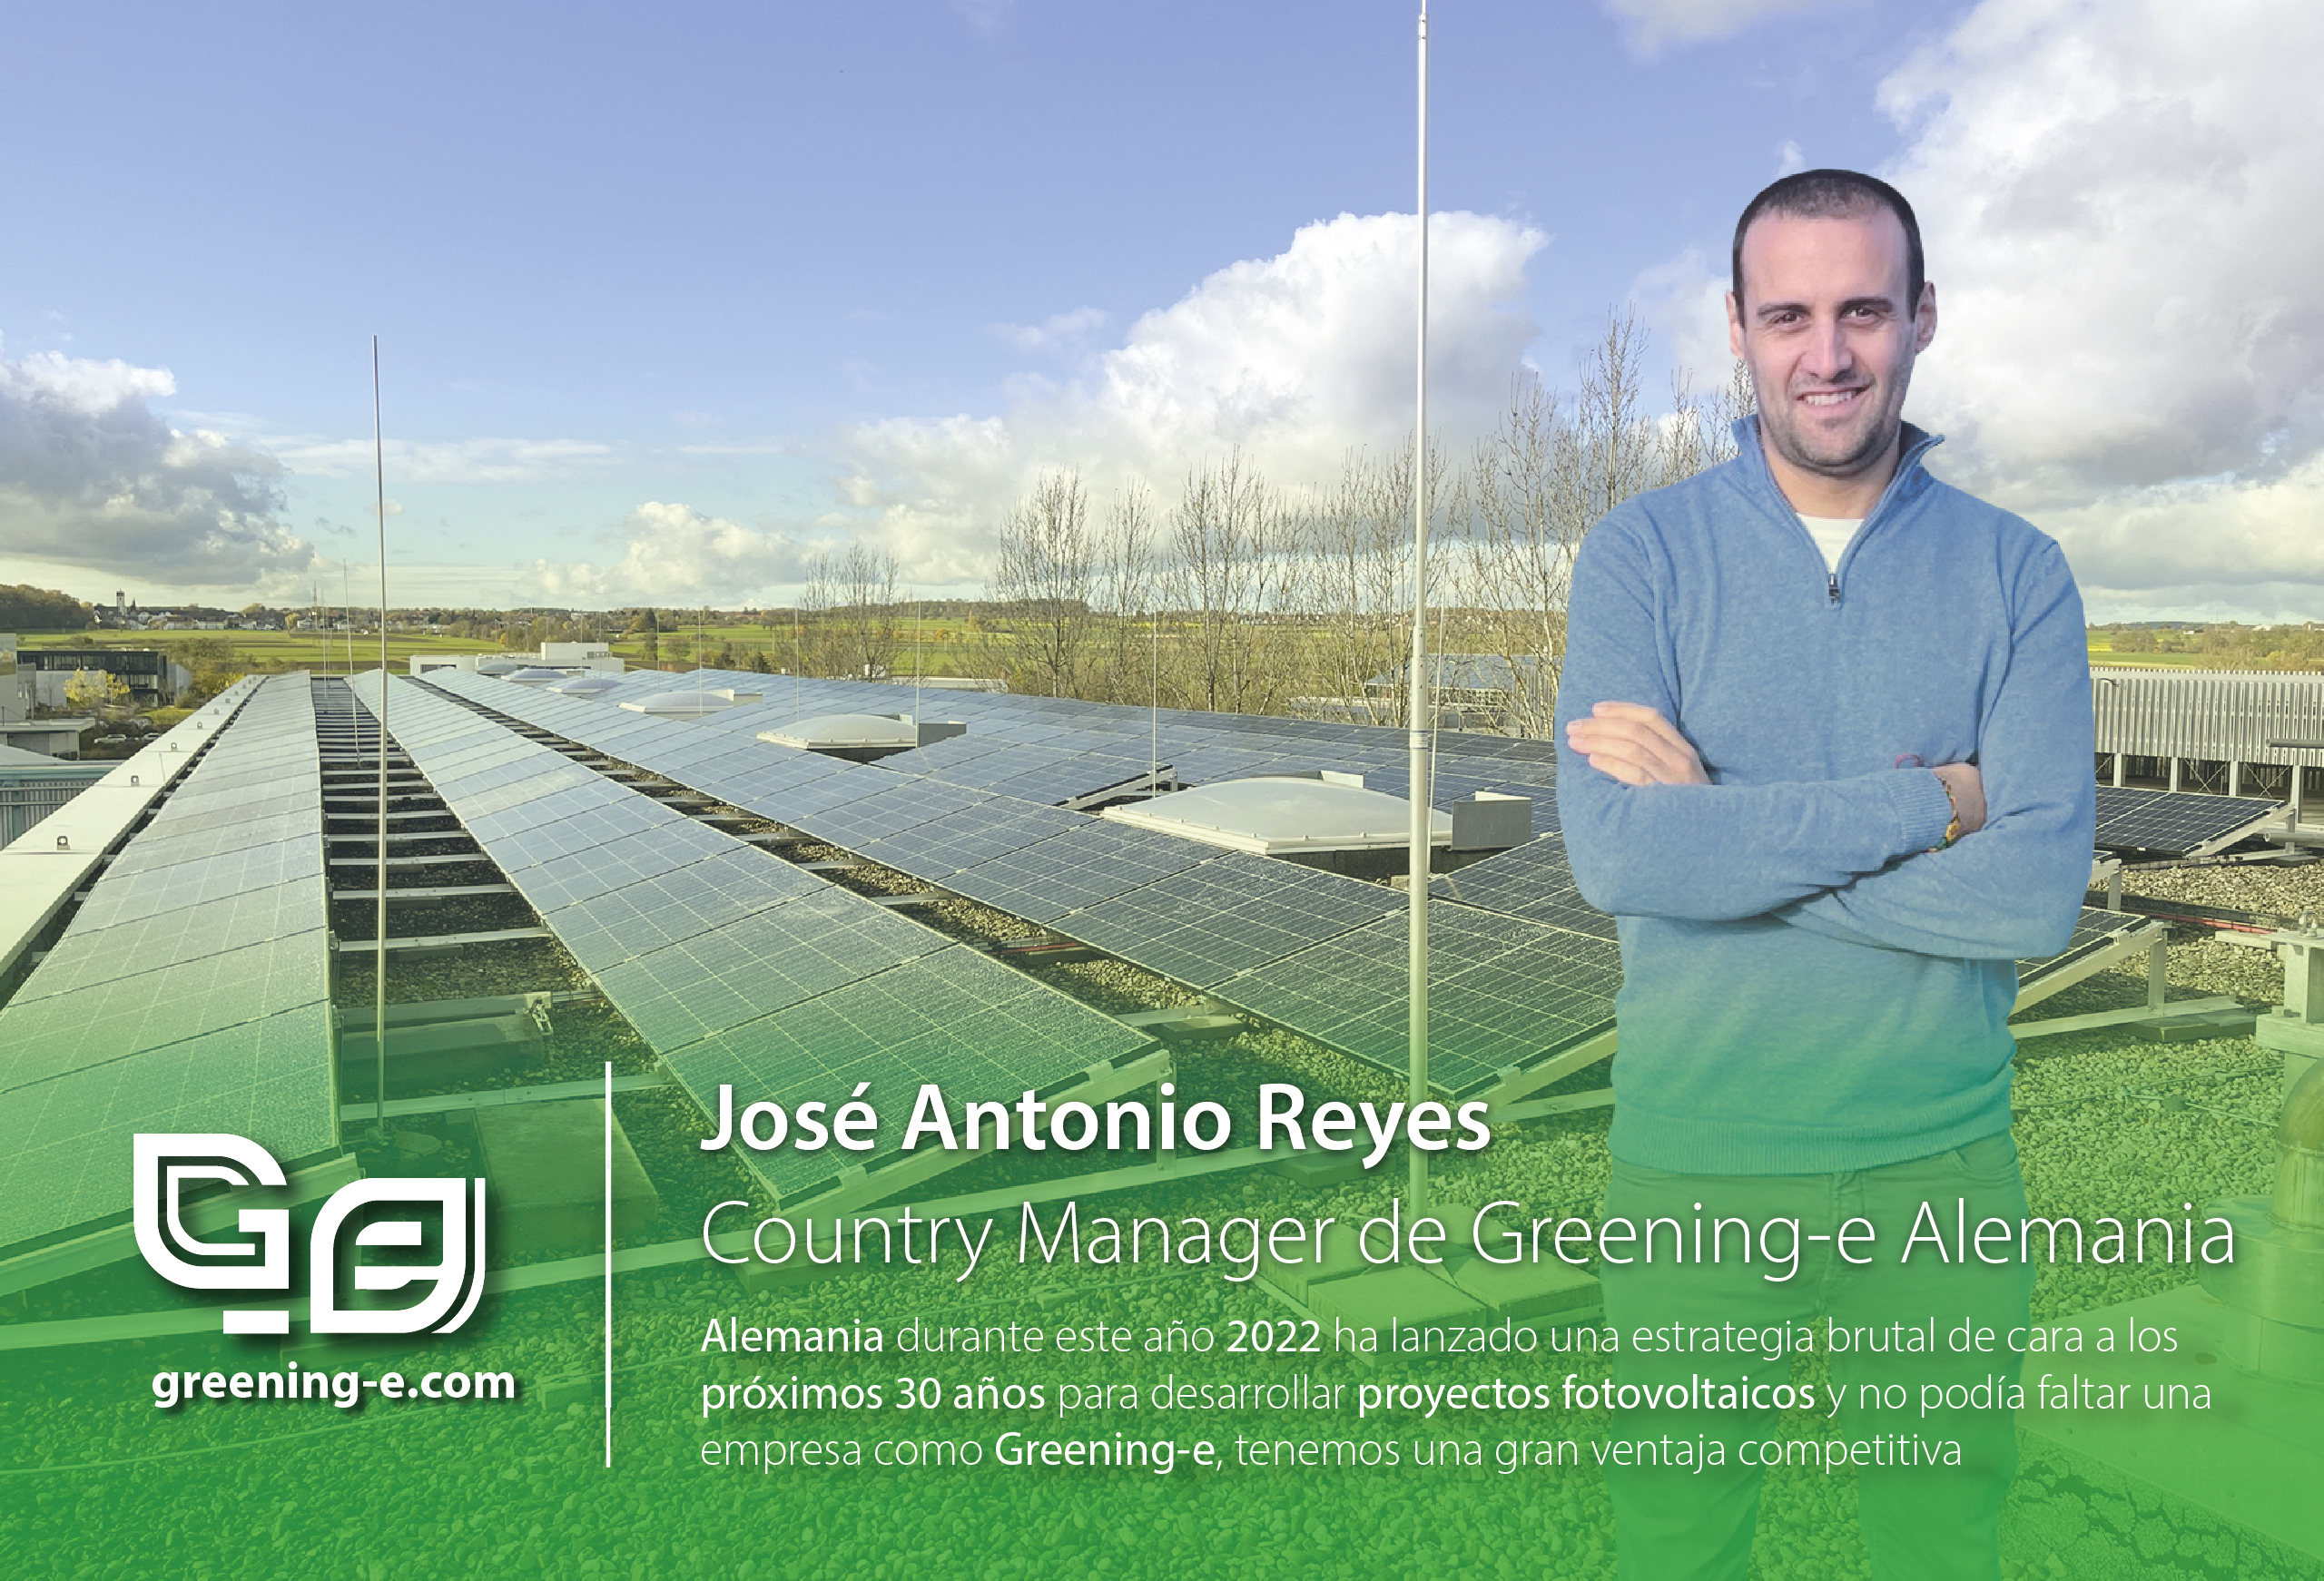 Country Manager de Greening-e Alemania, Jose Antonio Reyes Gómez